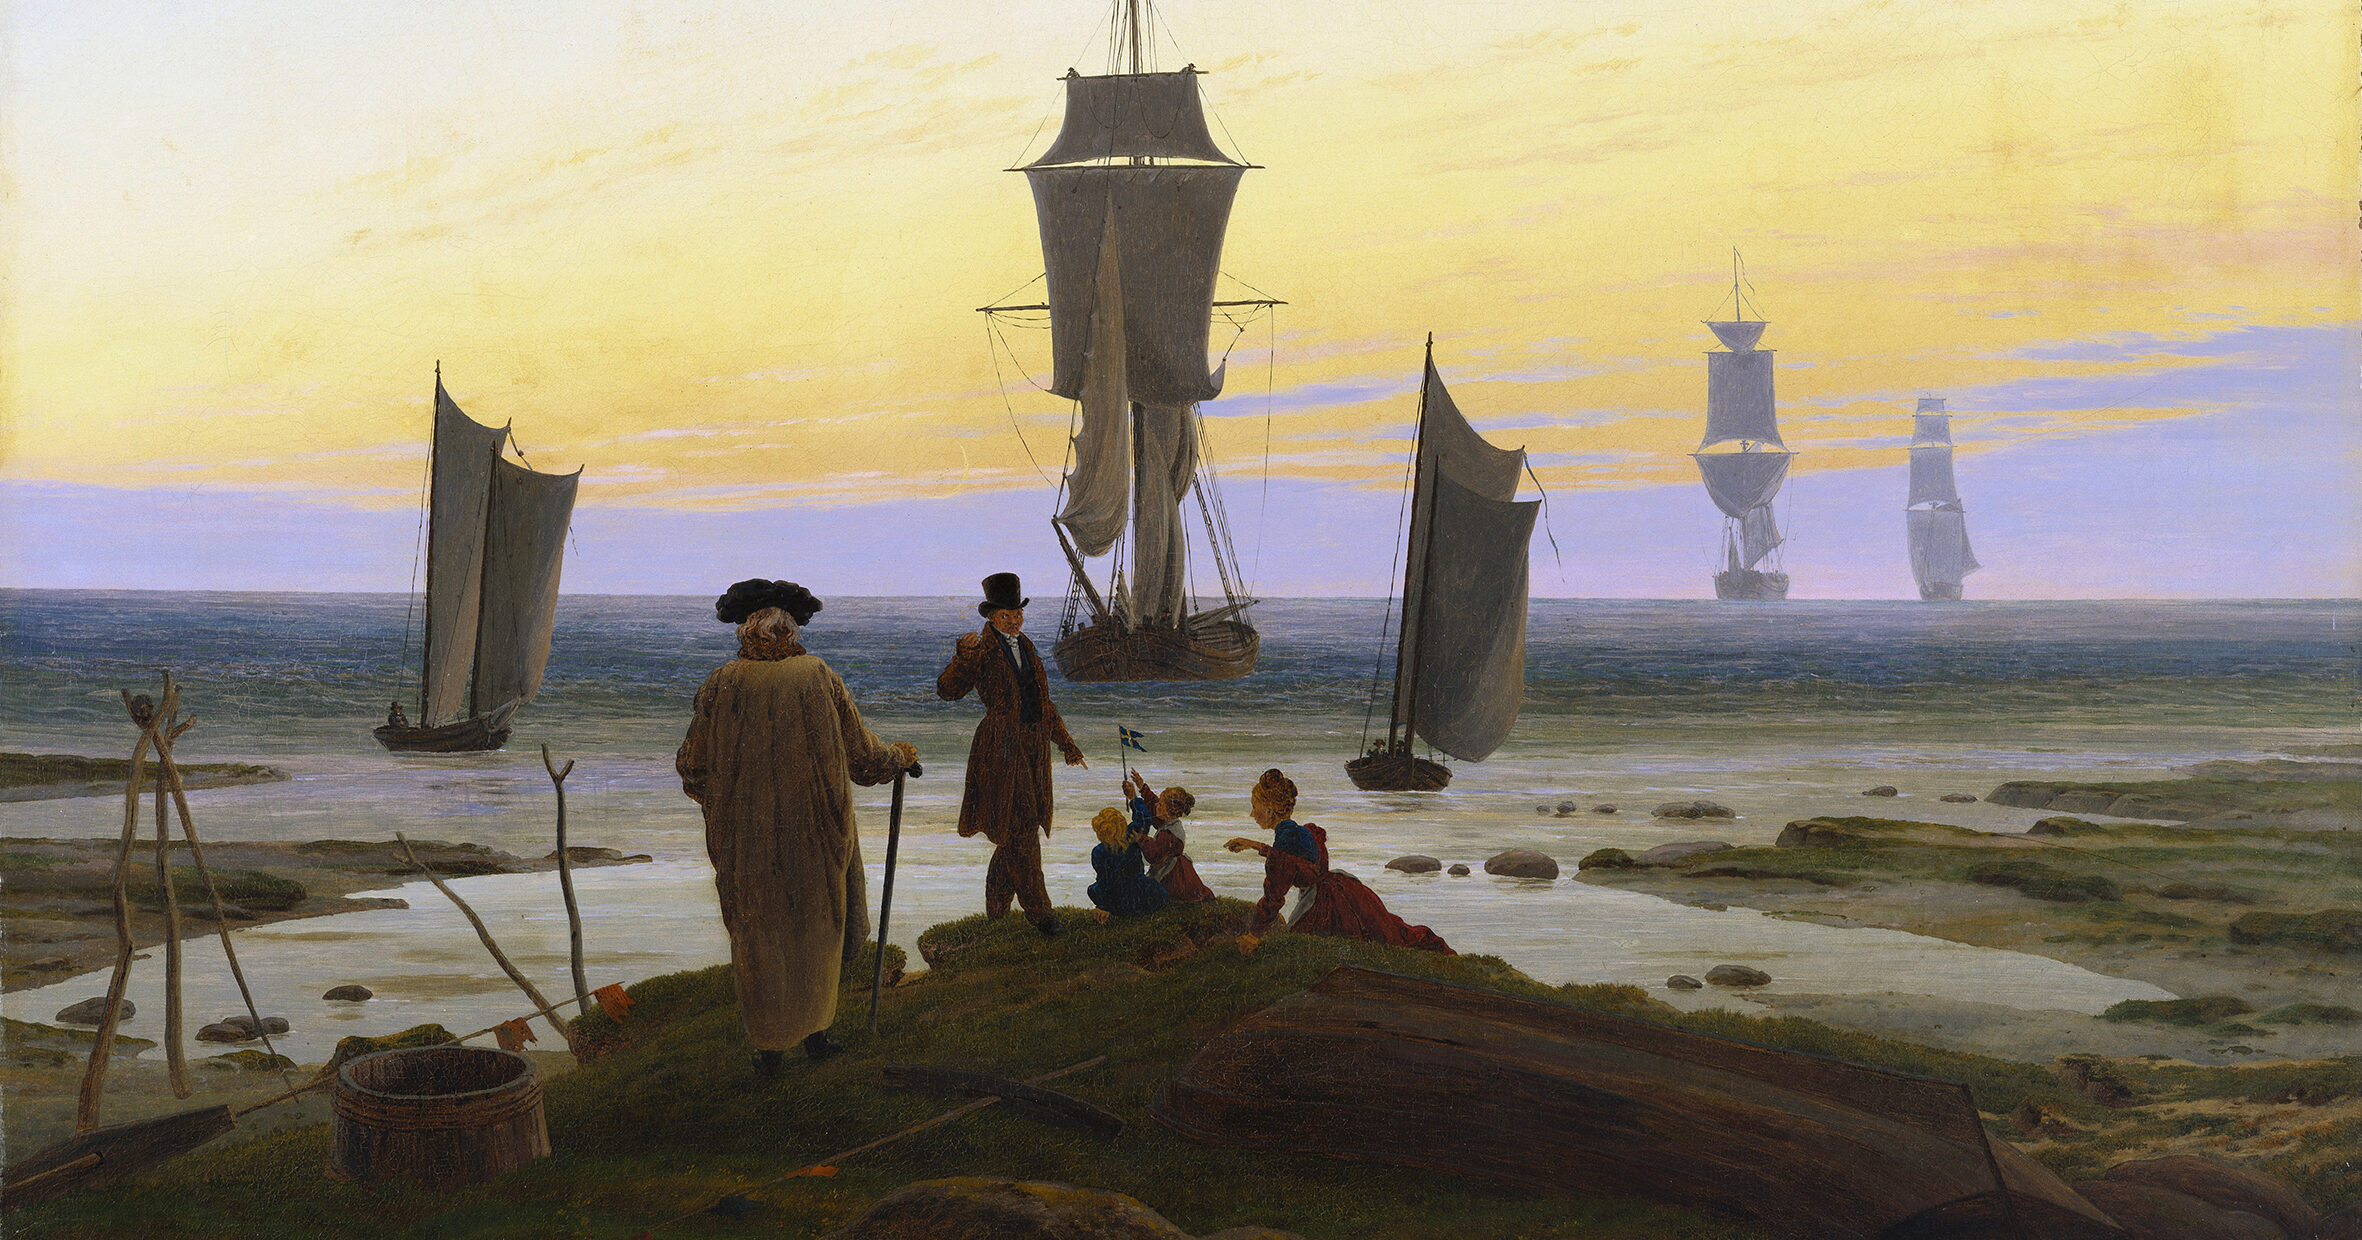 Dettaglio del dipinto "Le tre età dell'uomo" del pittore romantico tedesco Caspar David Friedrich